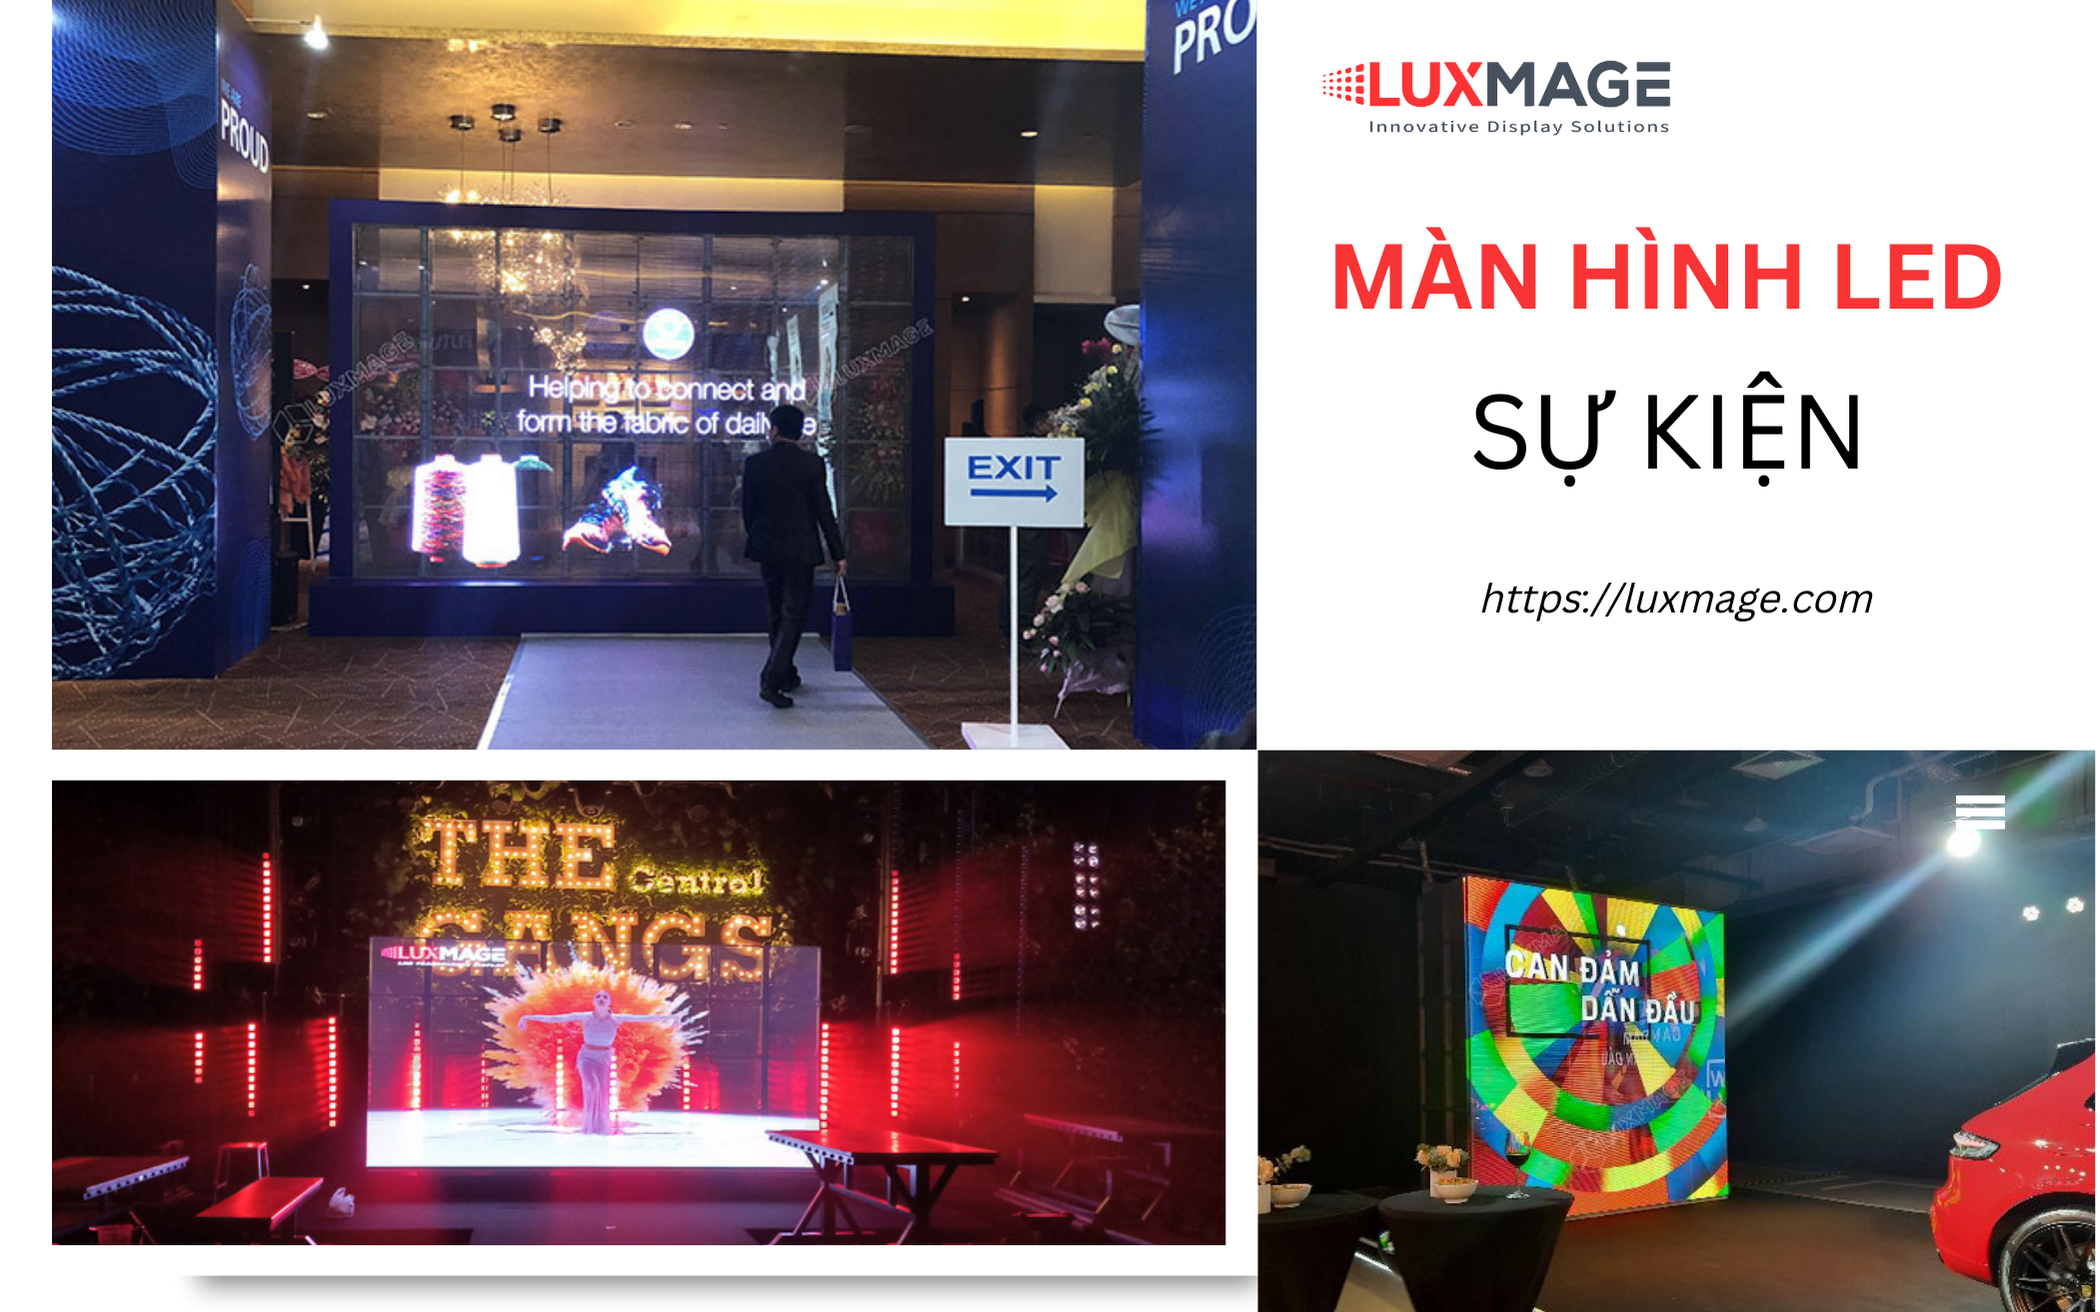 Giải pháp hiển thị màn hình LED trong suốt cho sự kiện của nhà Luxmage | Nâng tầm đẳng cấp, khuấy động mọi giác quan 